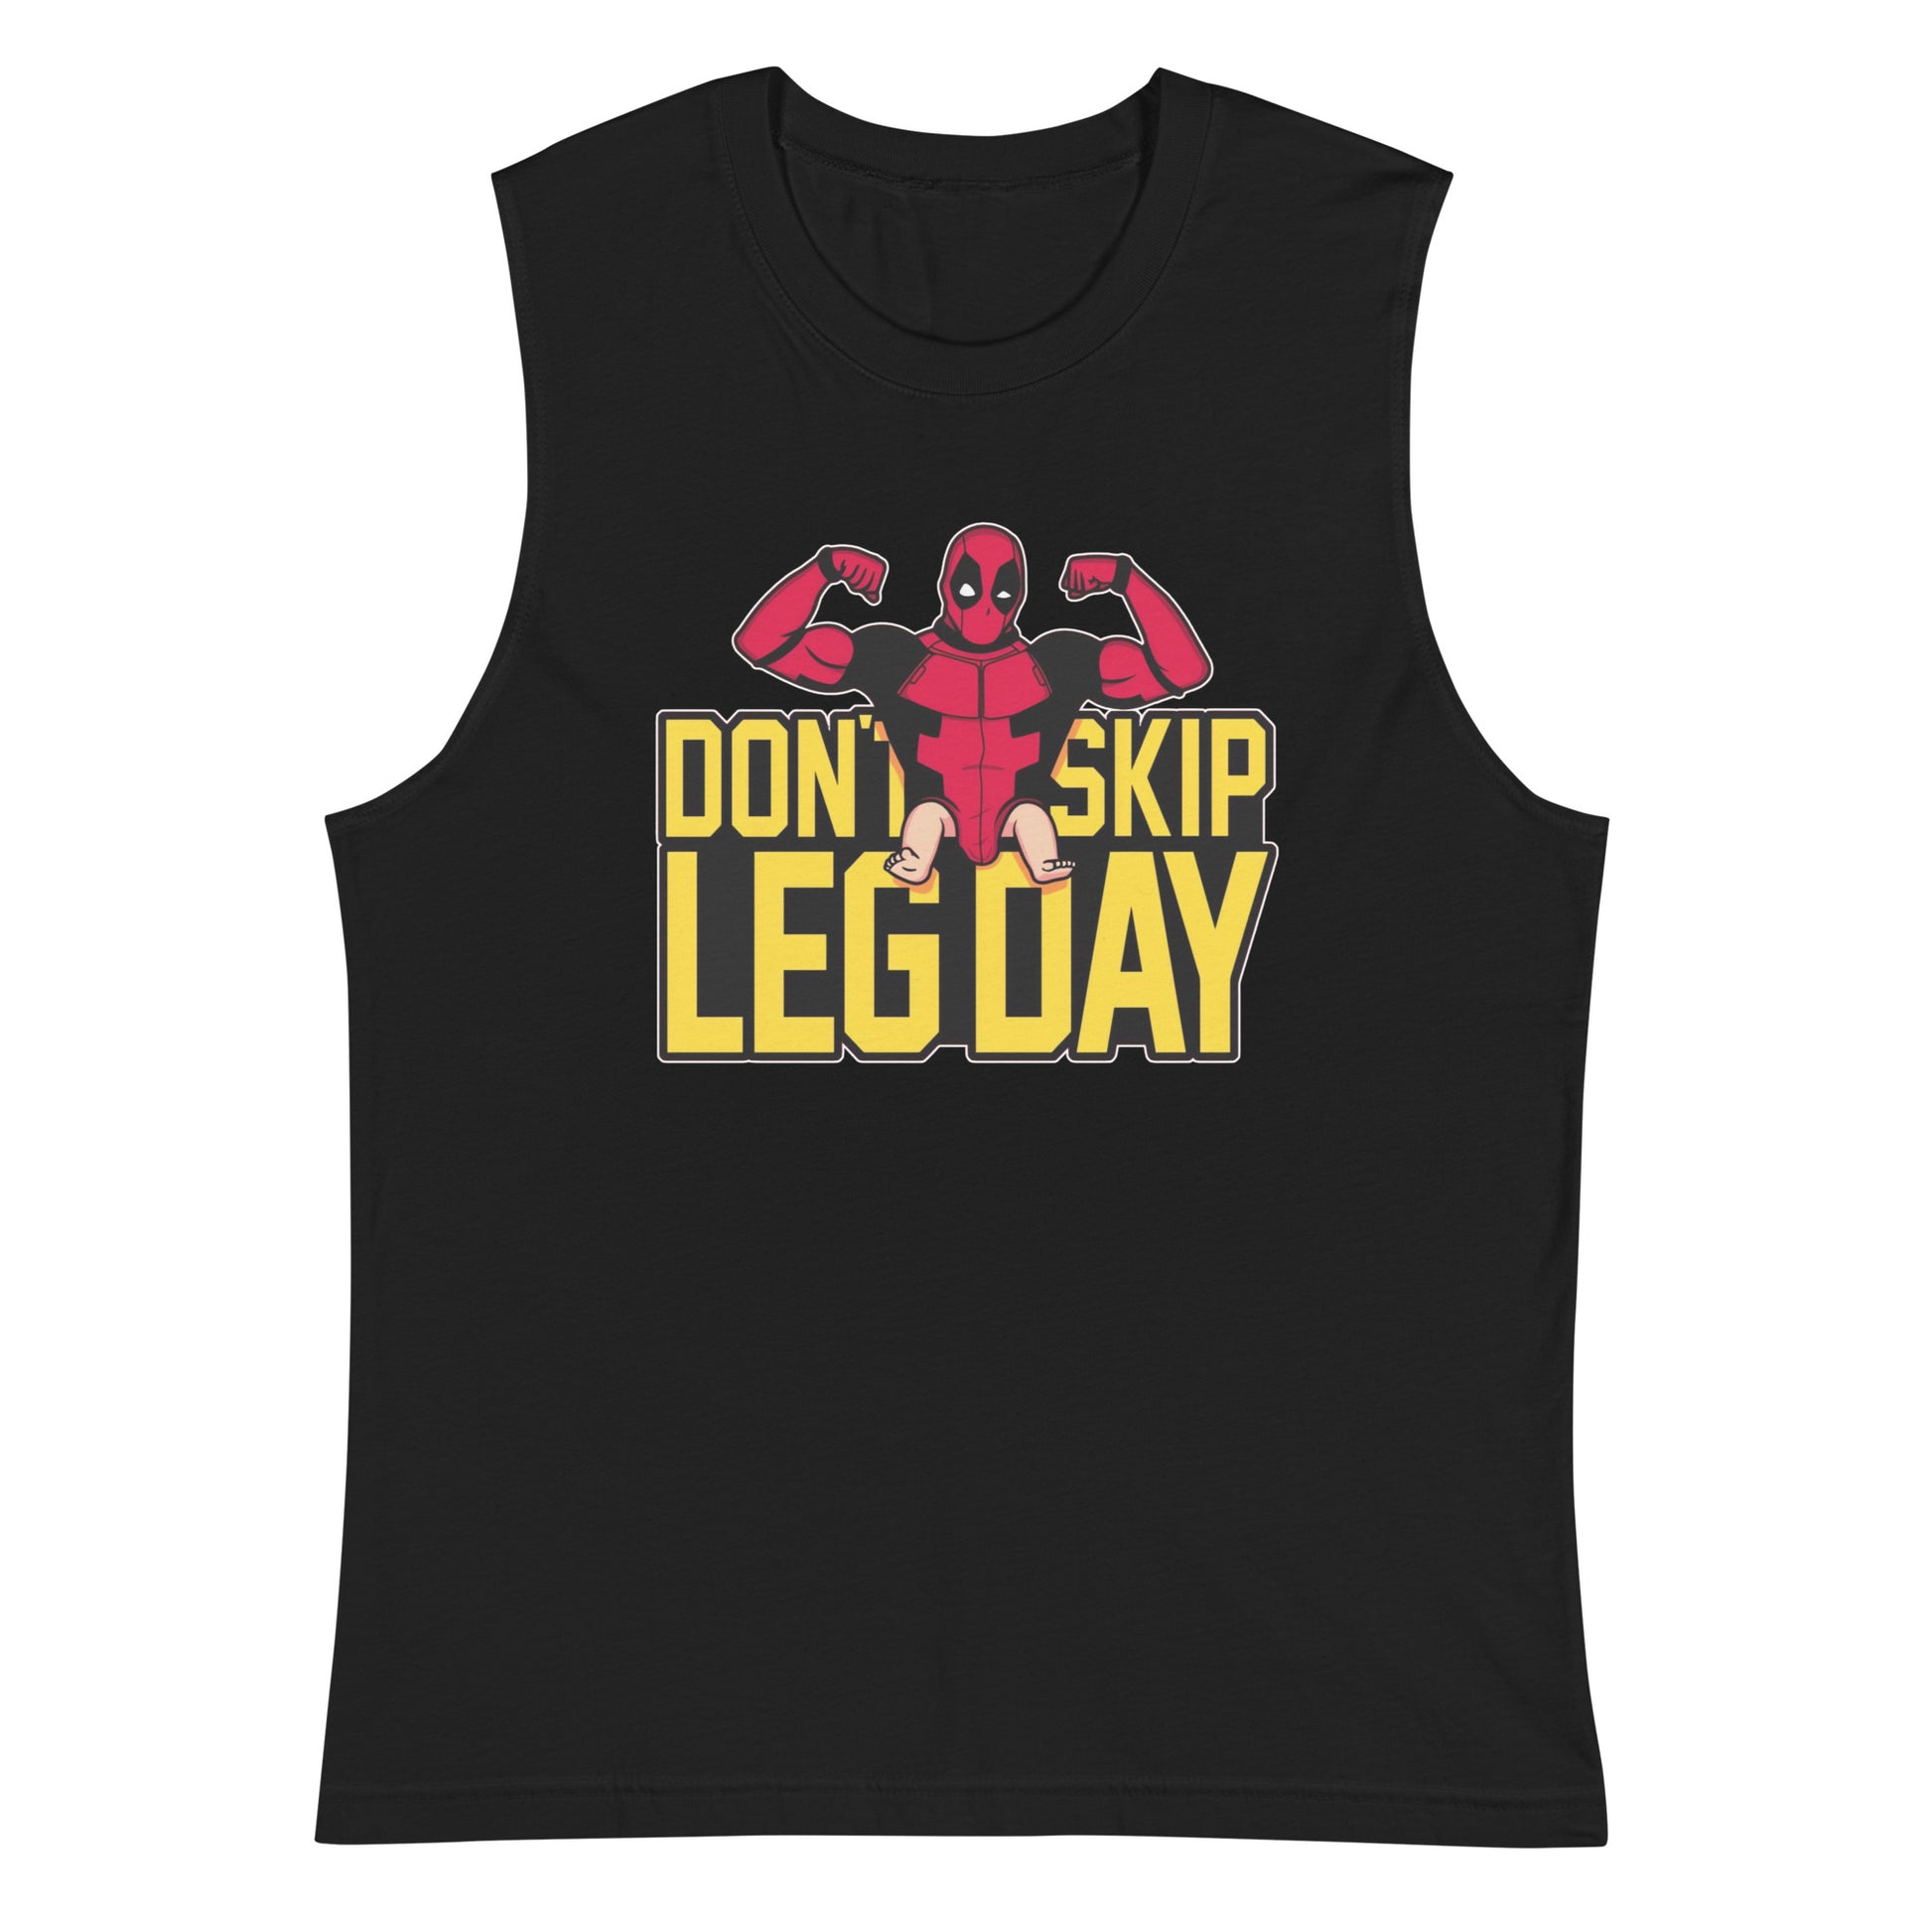 Camiseta sin mangas perfecta para entrenar, Camiseta Don't Skip Leg Day ordena en línea y experimenta el mejor servicio al cliente. 